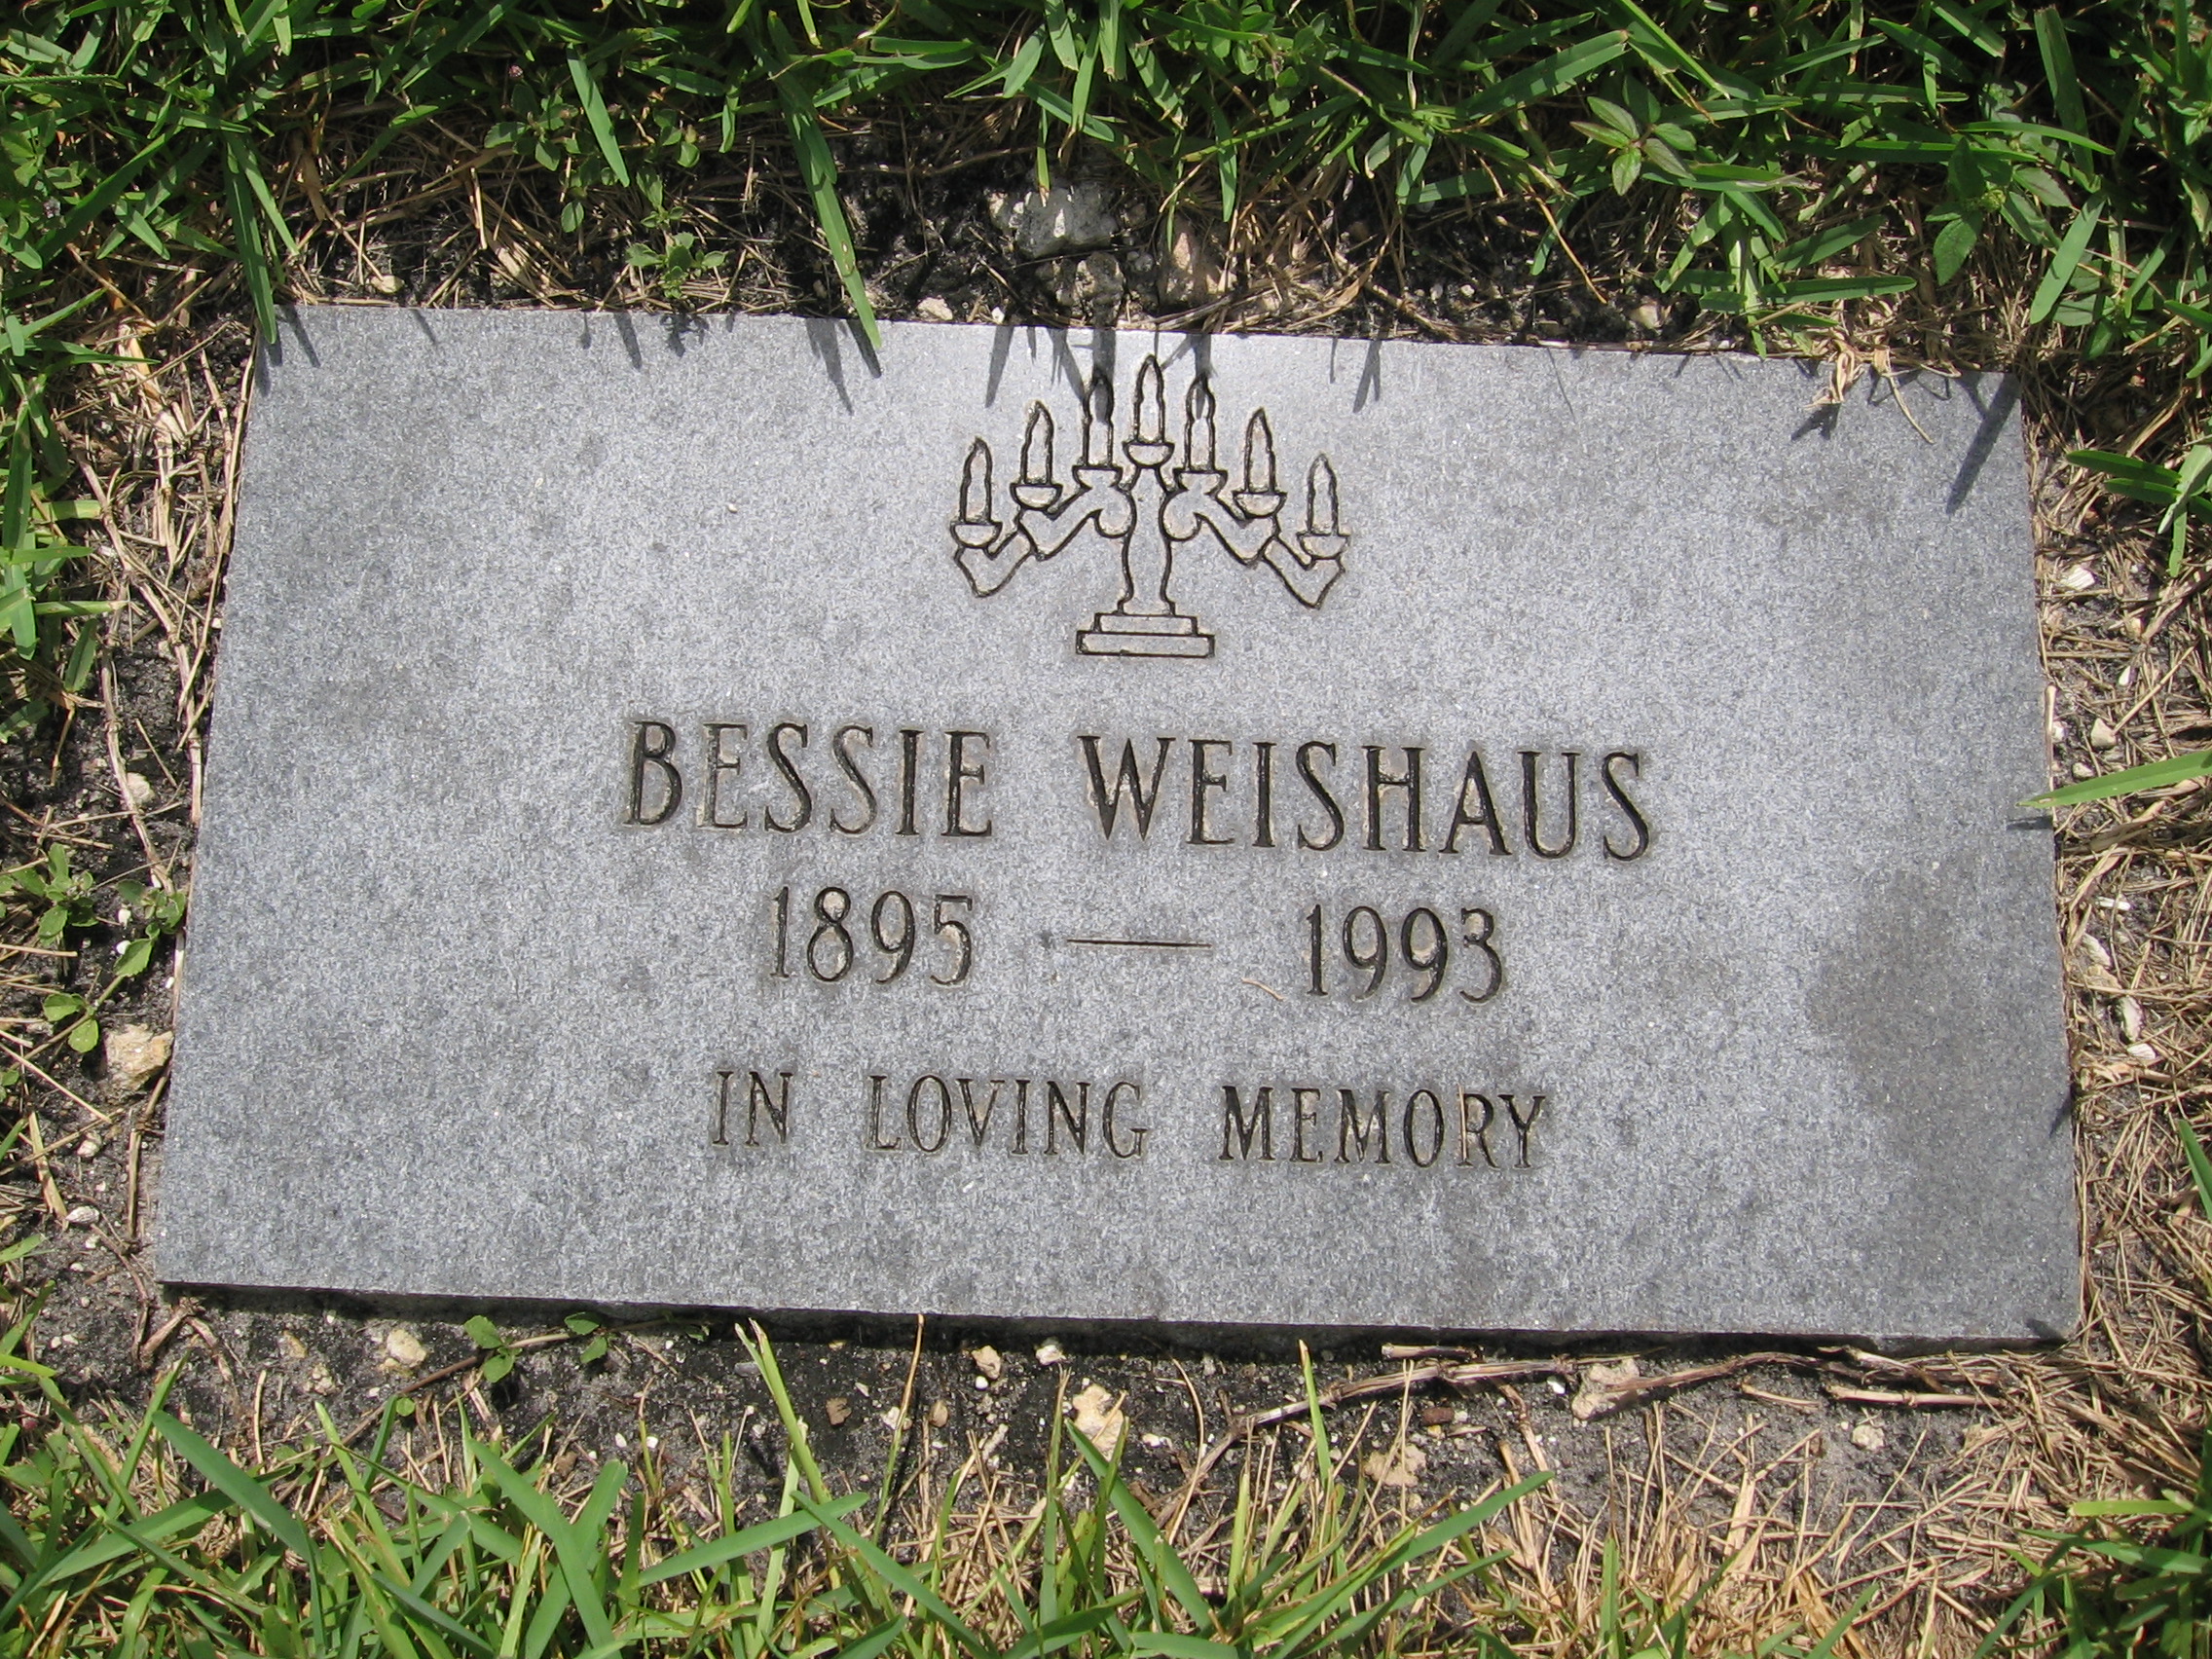 Bessie Weishaus